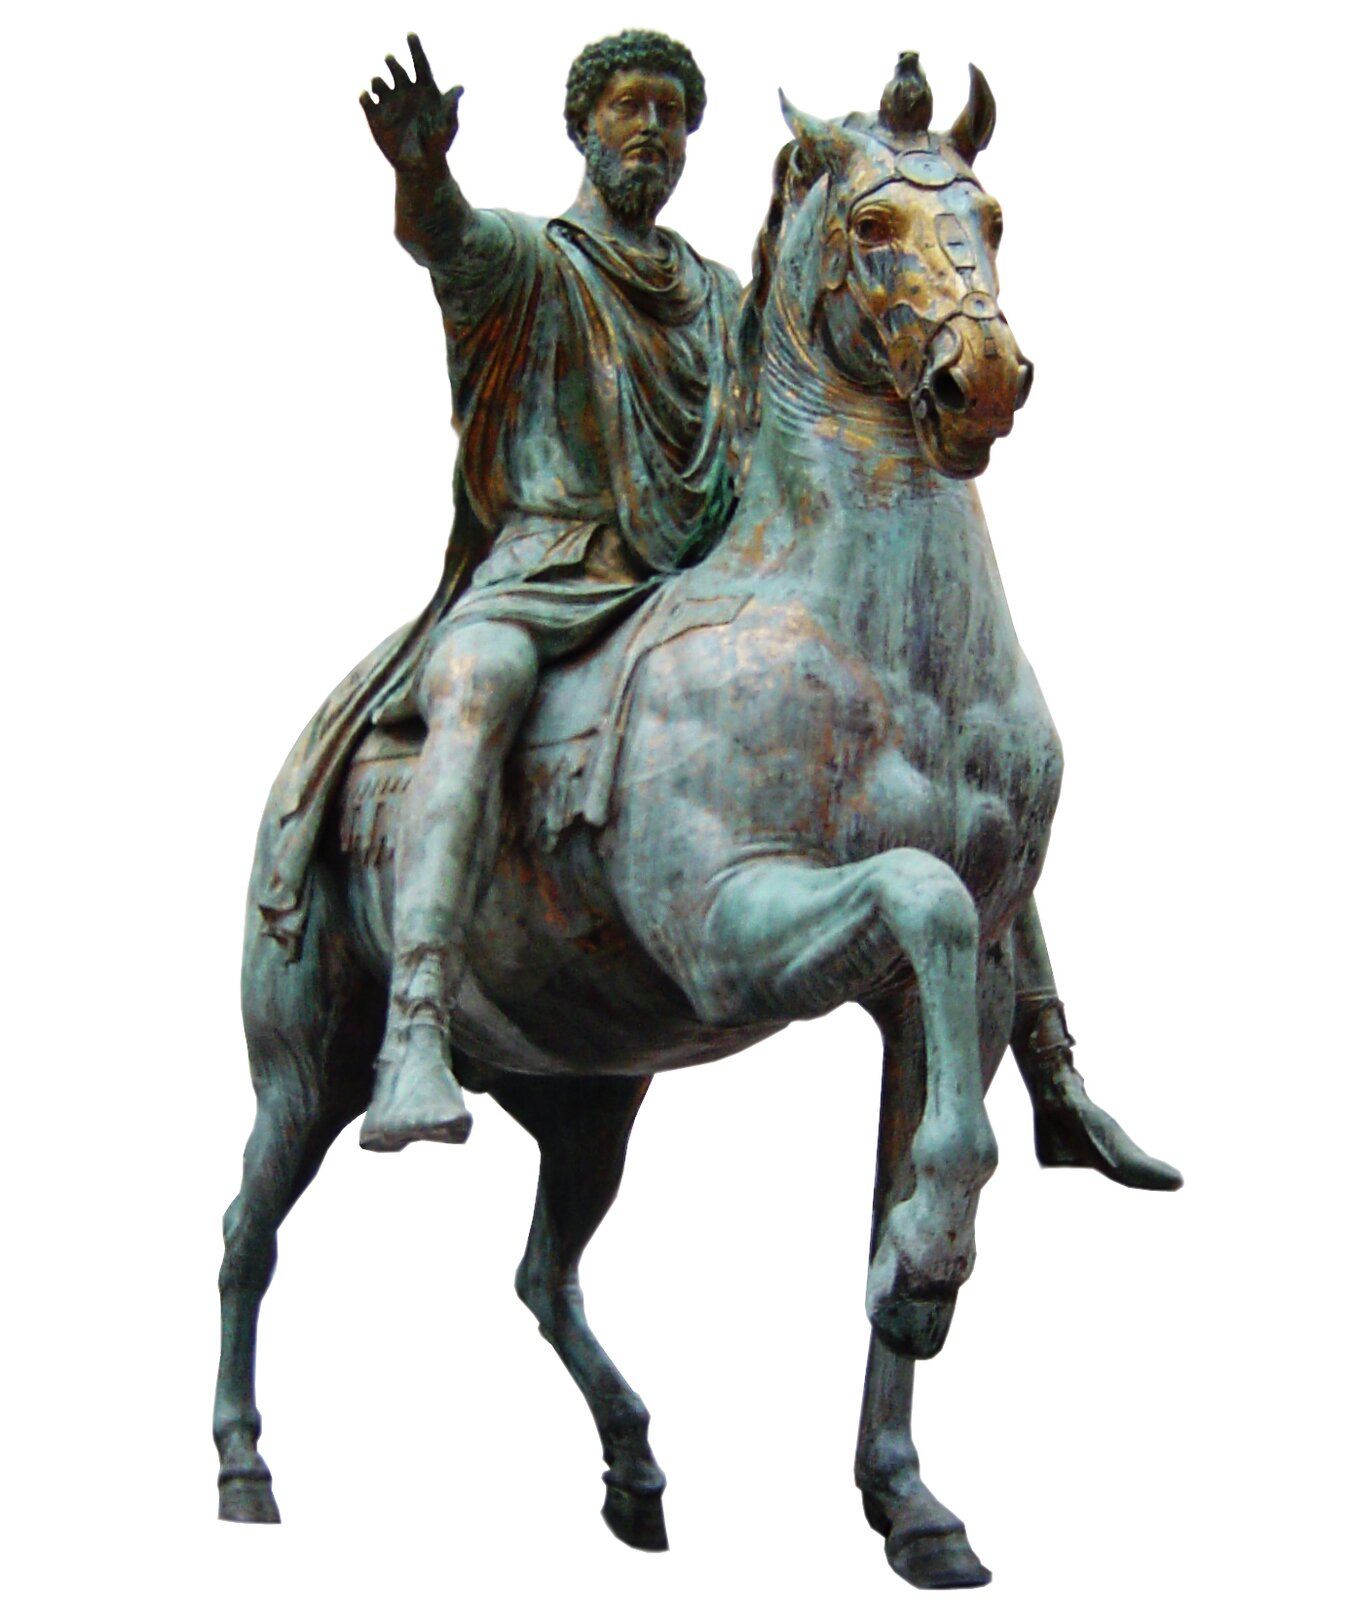 Rzeźba przedstawiająca brodatego mężczyznę siedzącego na koniu. Mężczyzna ma wyciągniętą przed siebie prawą rękę. Posąg jest z metalu pokrytego zieloną patyną, w niektórych miejscach widać jednak złoty kolor metalu.